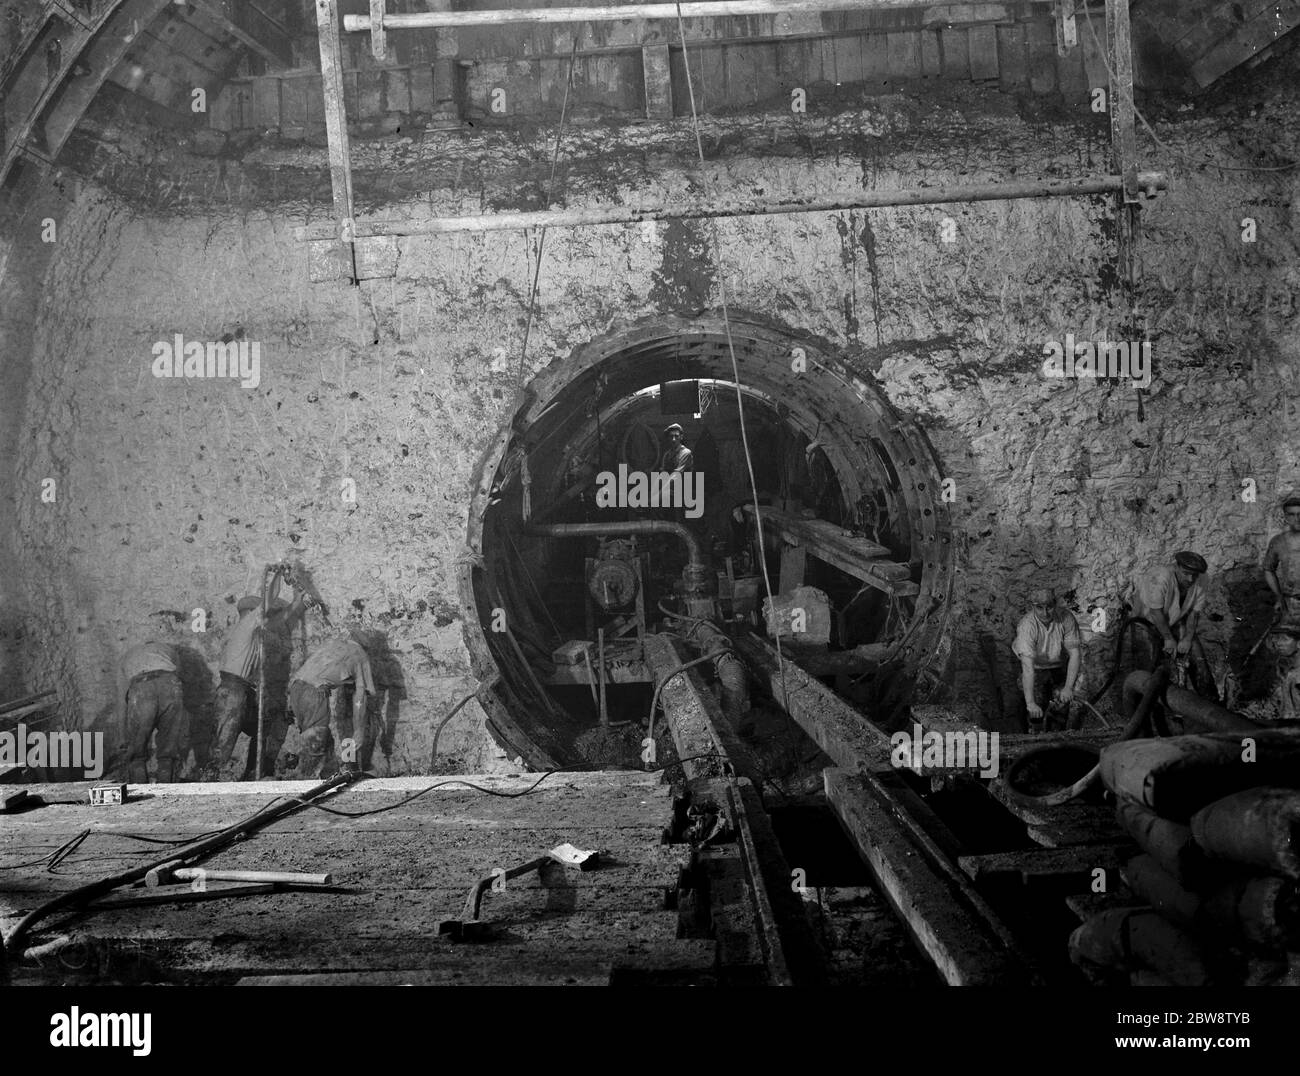 La costruzione del tunnel di Dartford . Lavoratori che costruiscono lo scudo principale per la tunnellatura, presso l'ingresso del tunnel pilota. 1938 Foto Stock